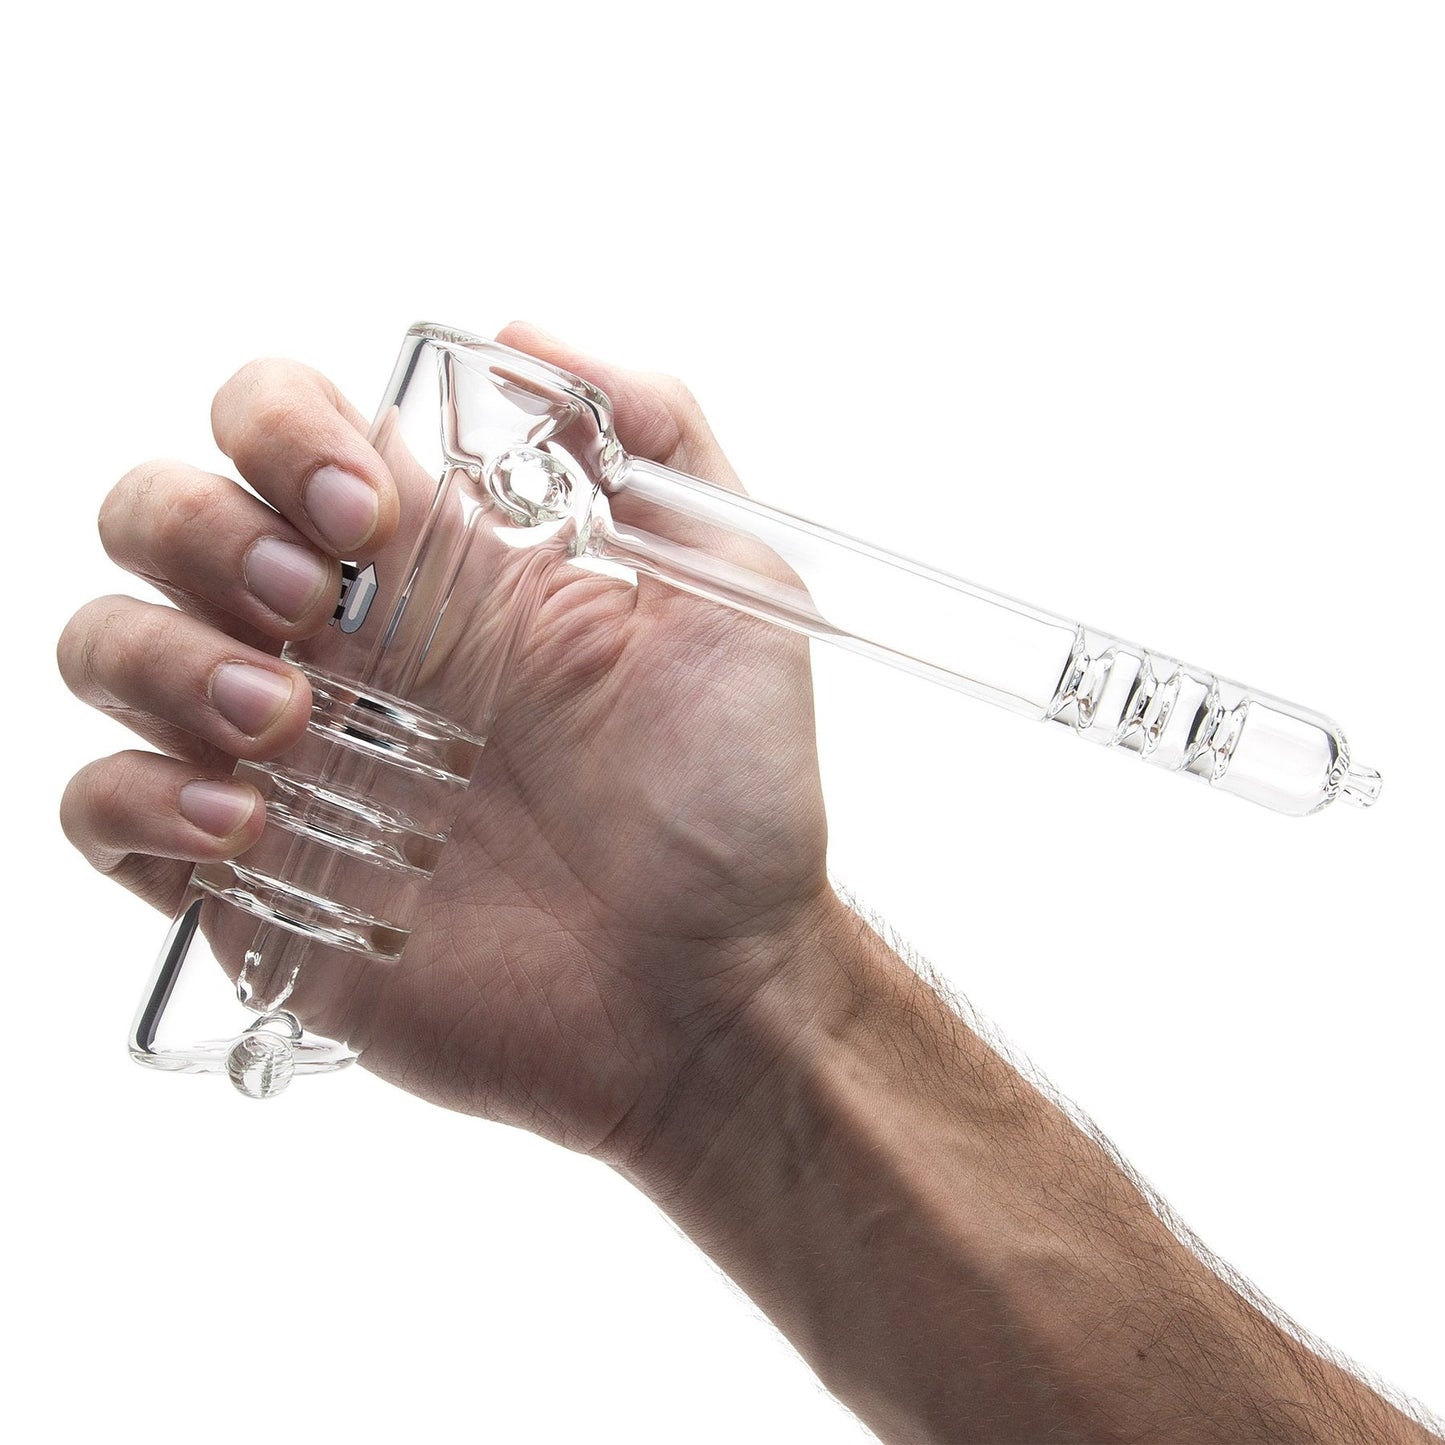 Grav Upline® Hammer Bubbler Pipe by GRAV / Grav Labs | Mission Dispensary